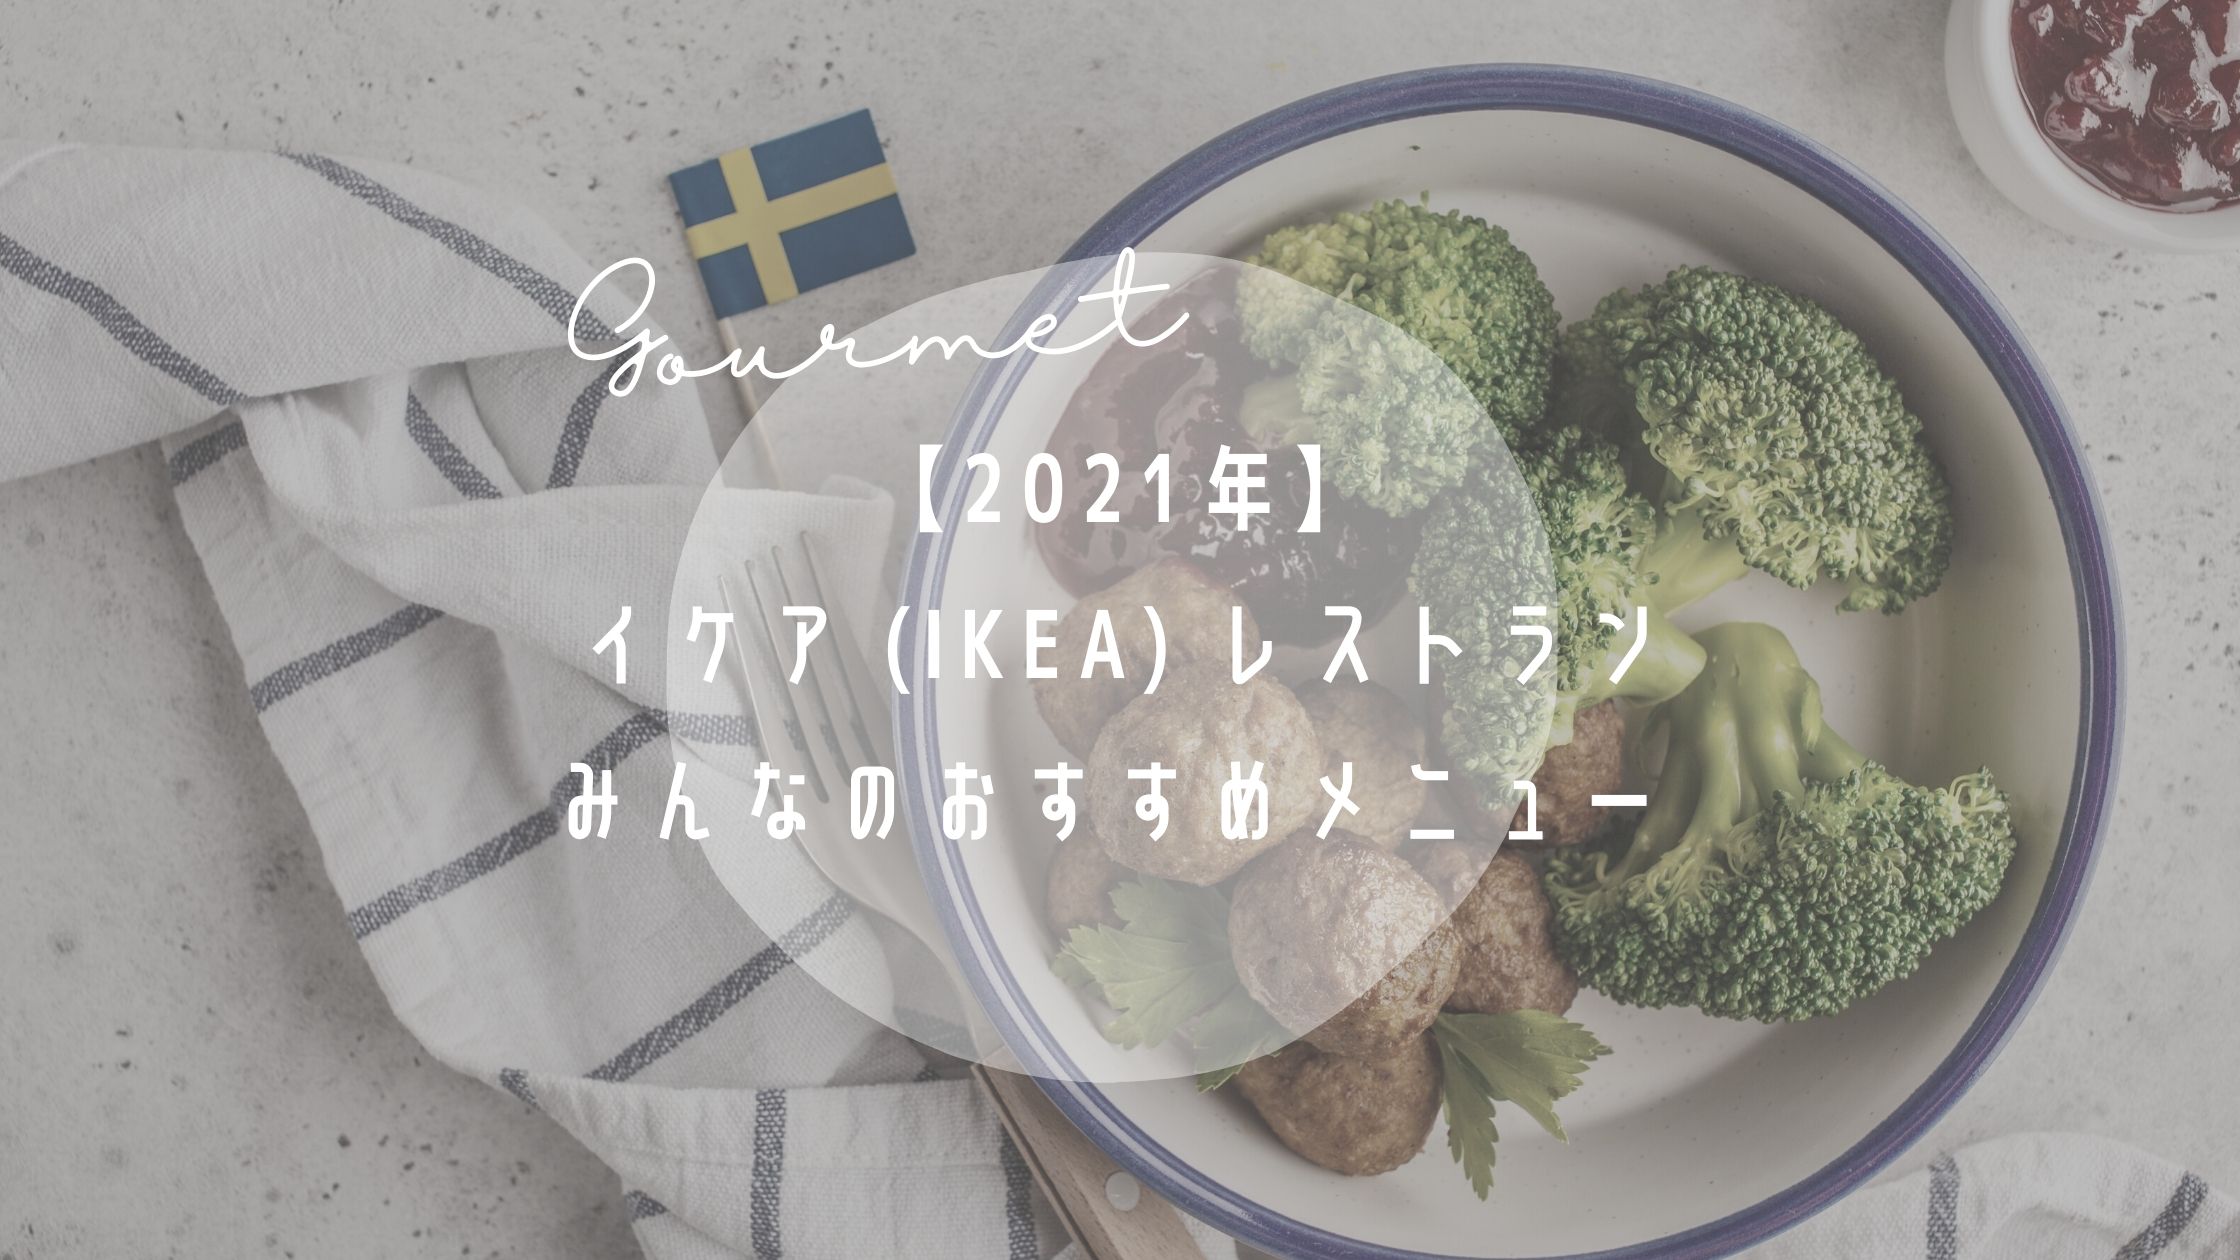 【2021年】イケア (IKEA) レストランみんなのおすすめメニュー | 30人にアンケートしてみました!